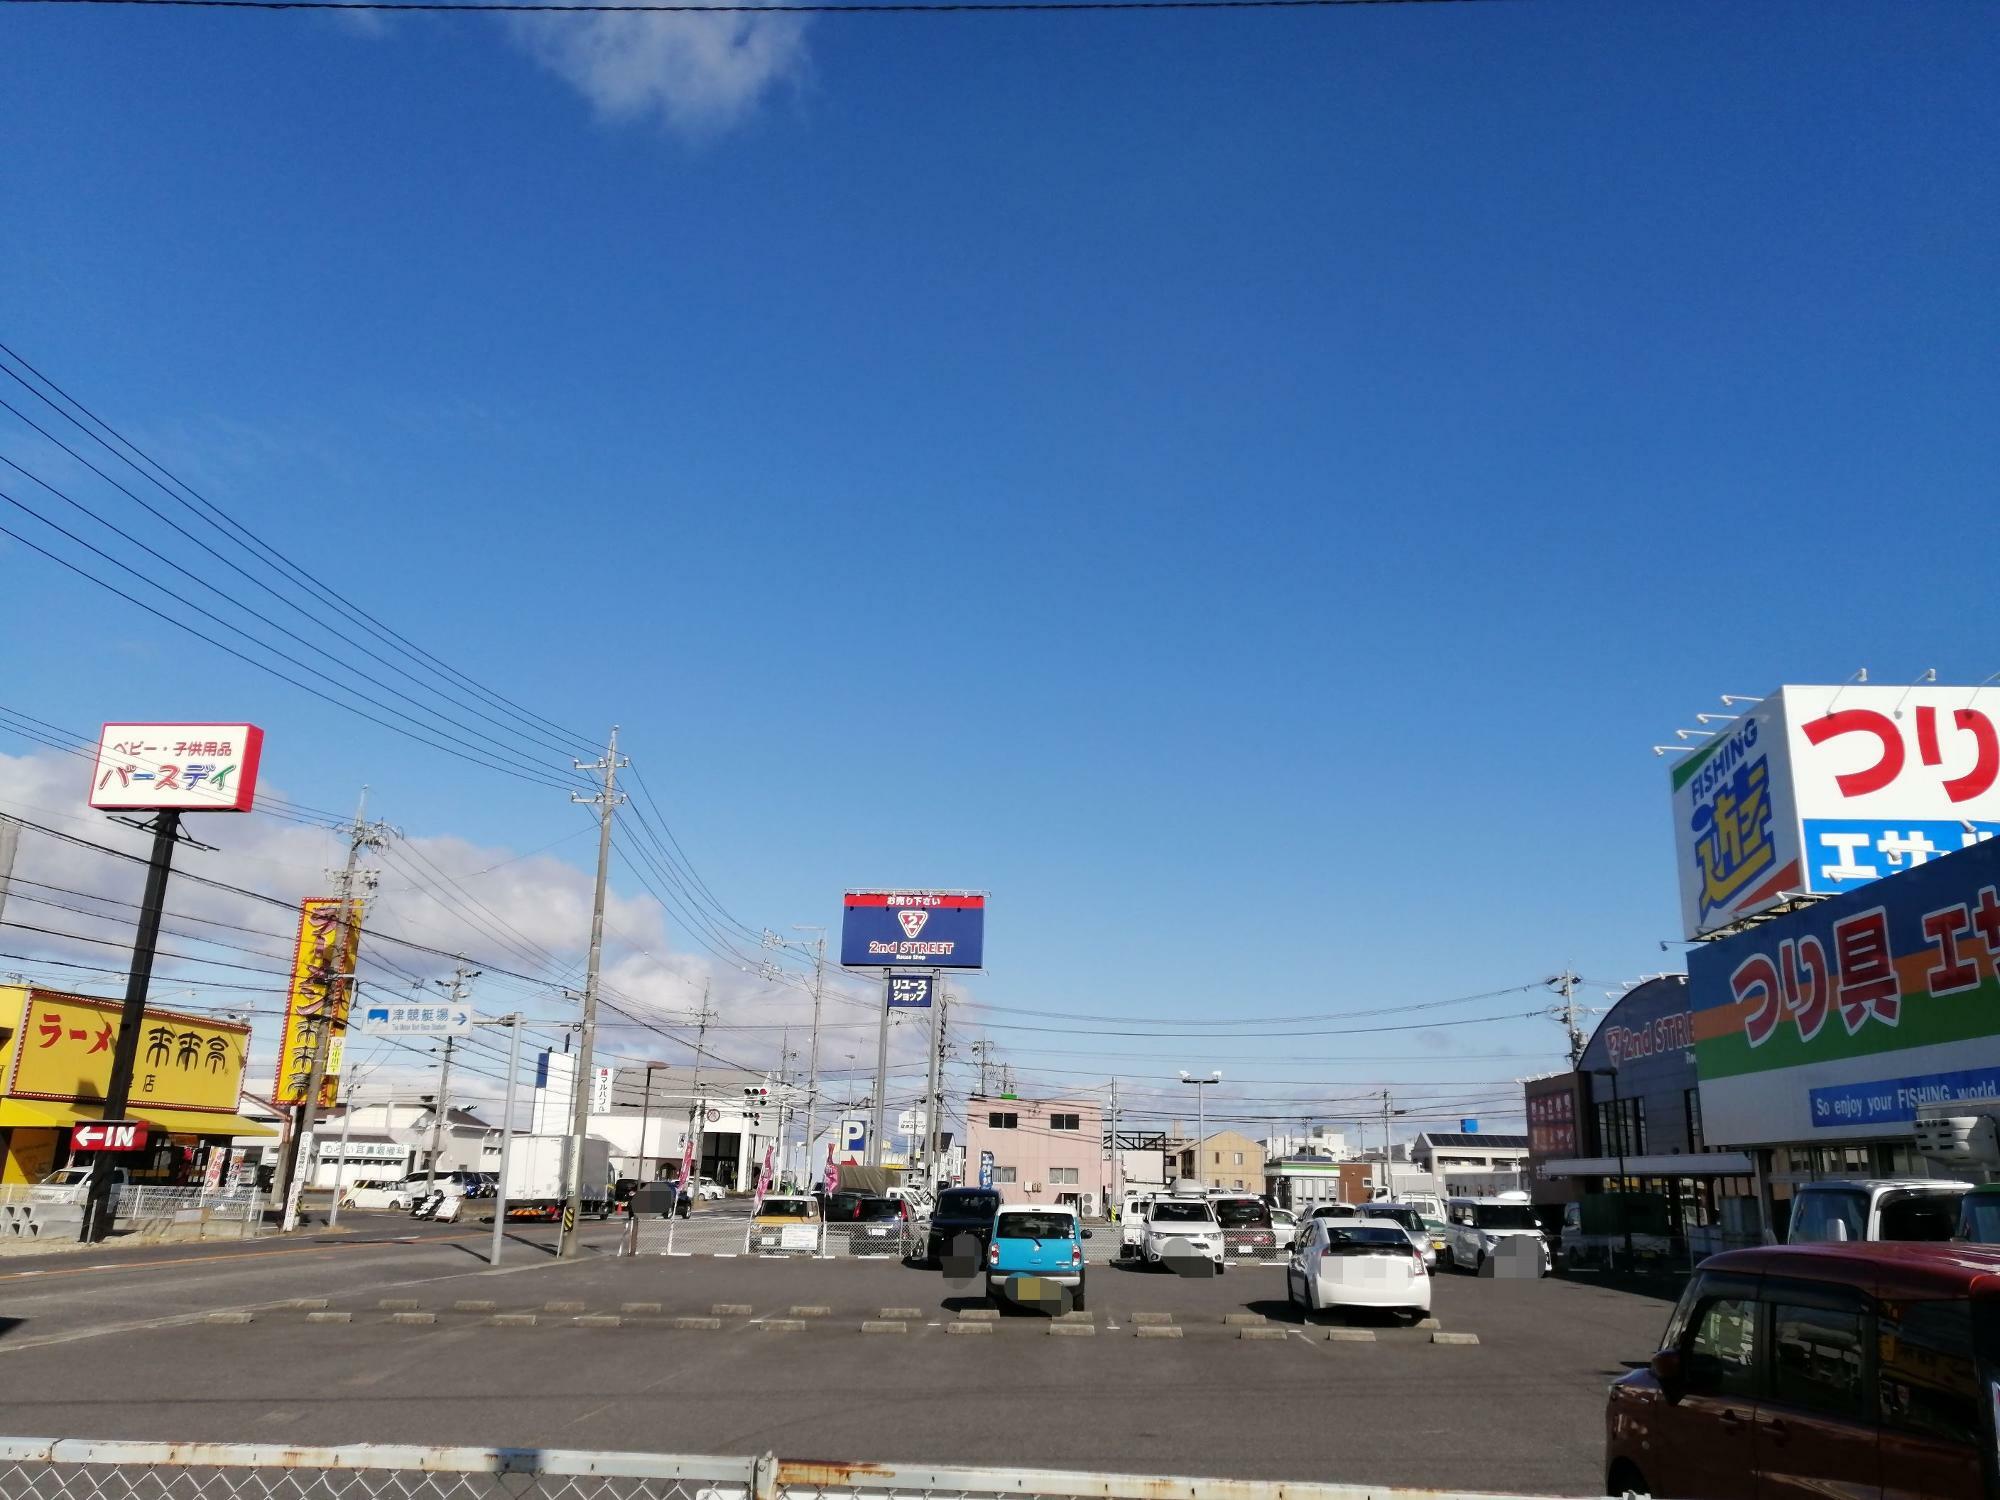 近鉄道路沿い「西松屋 津藤方店」の駐車場からの写真